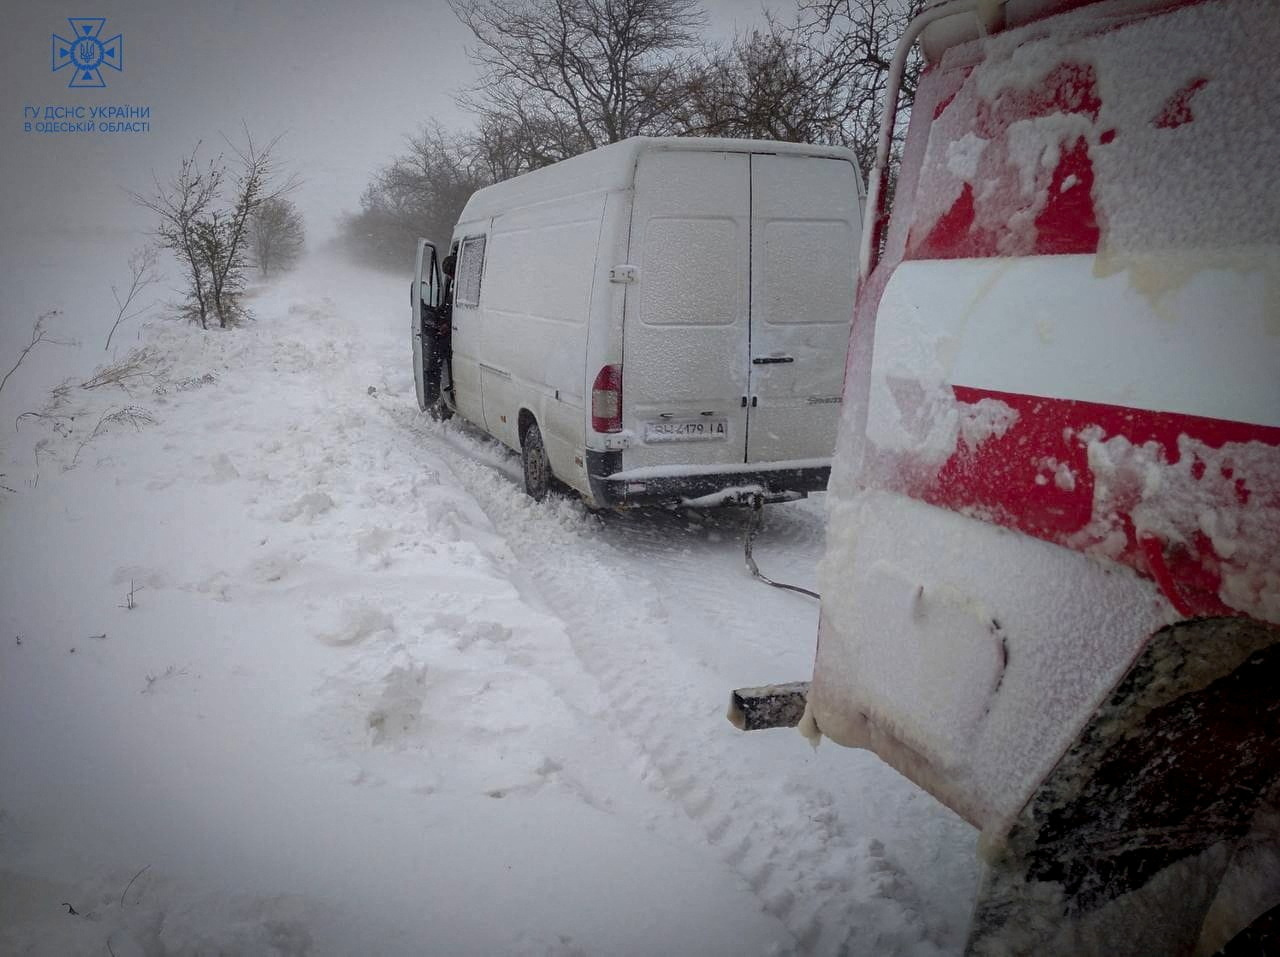 ウクライナで冬の嵐、南部とモルドバで死者 停電も - ロイター (Reuters Japan)